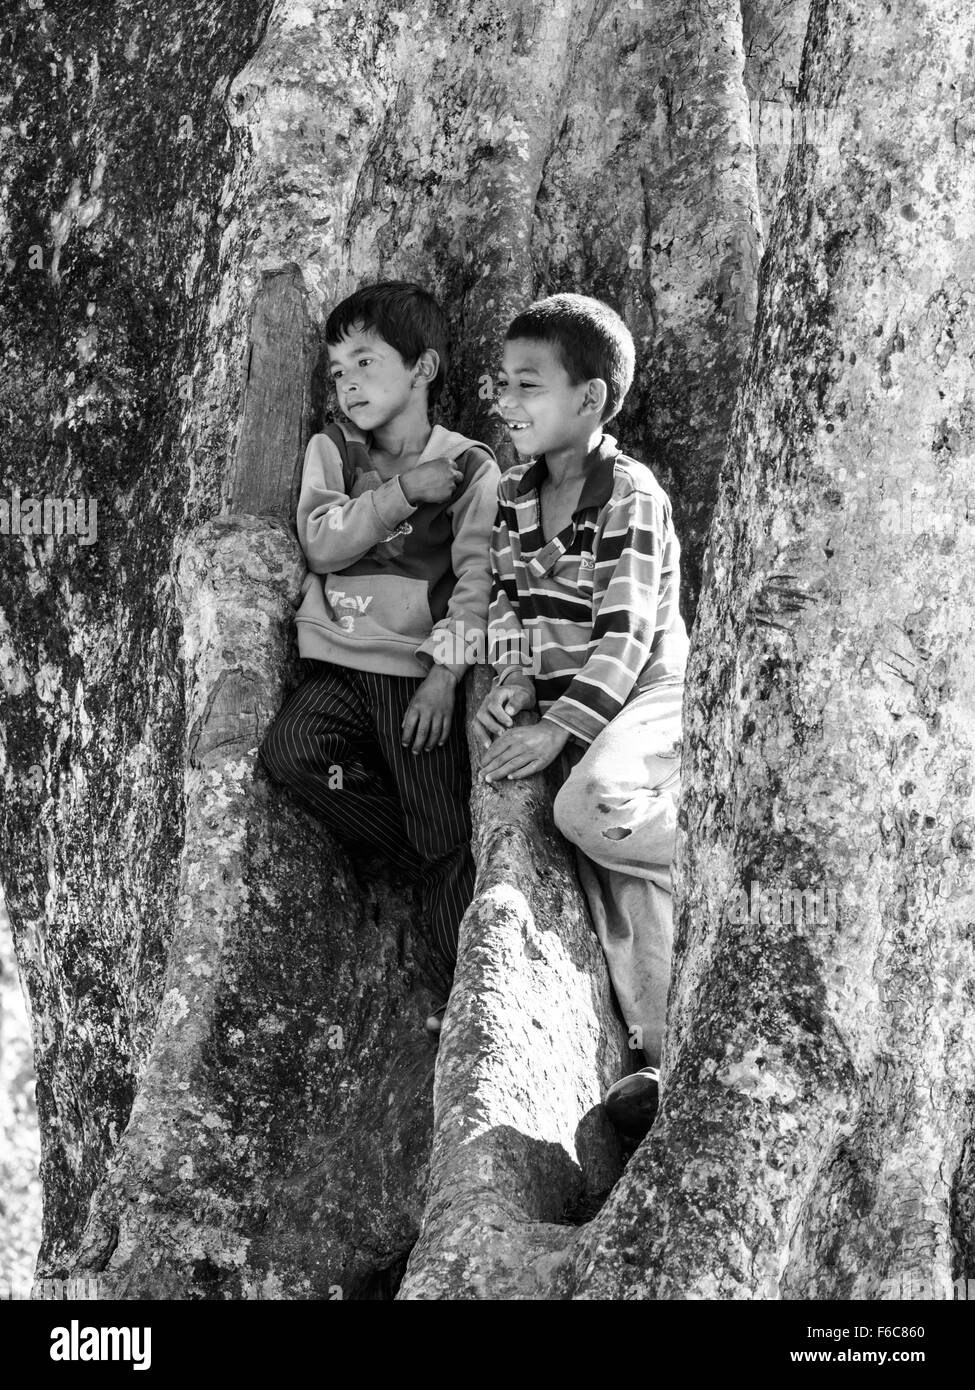 Schwarz / weiß Bild von zwei jungen Kletterbaum in Thakurdwara Dorf, Nepal Stockfoto